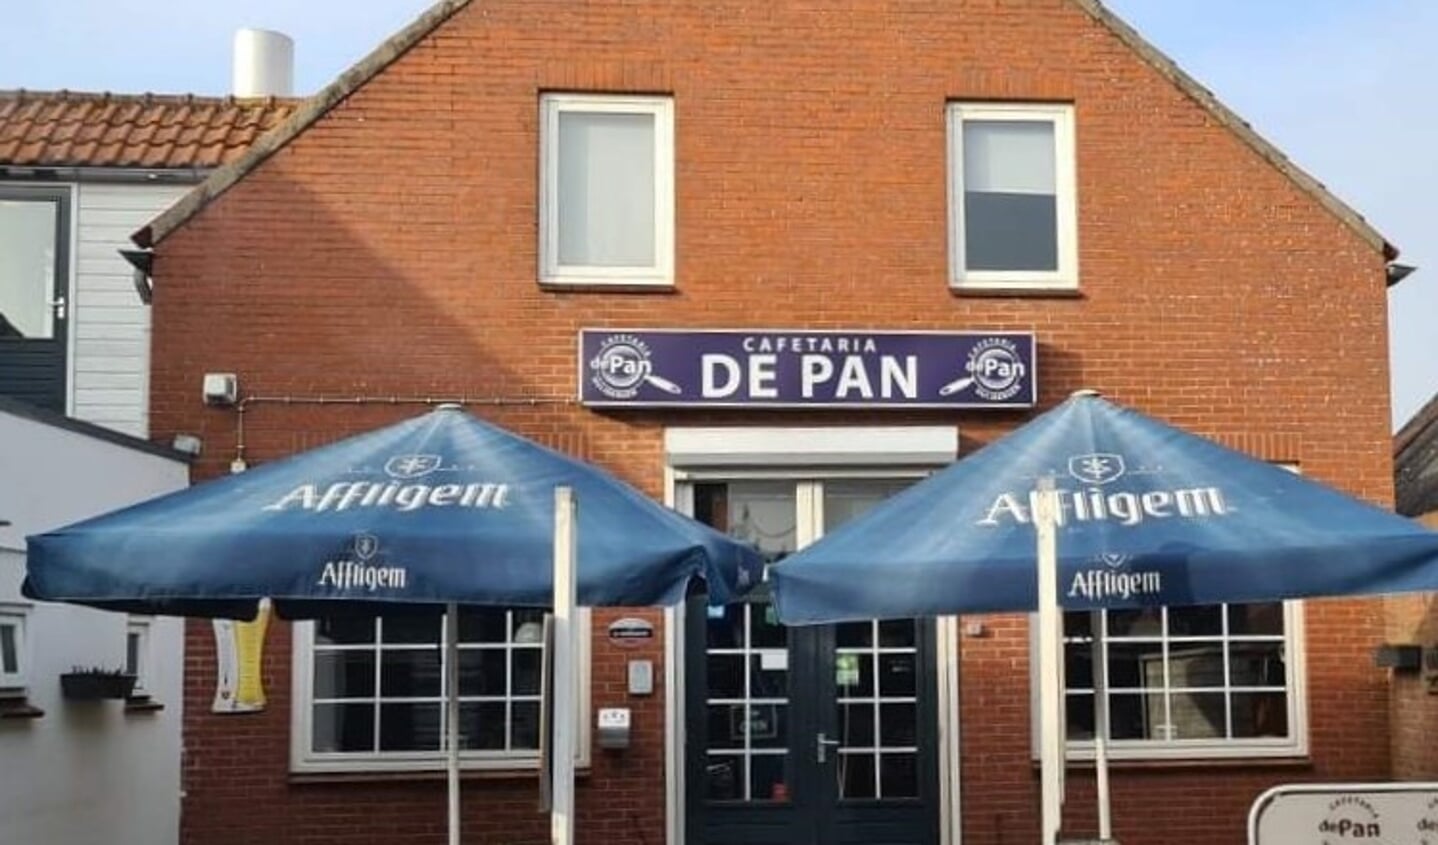 Cafetaria De Pan in Huijbergen.